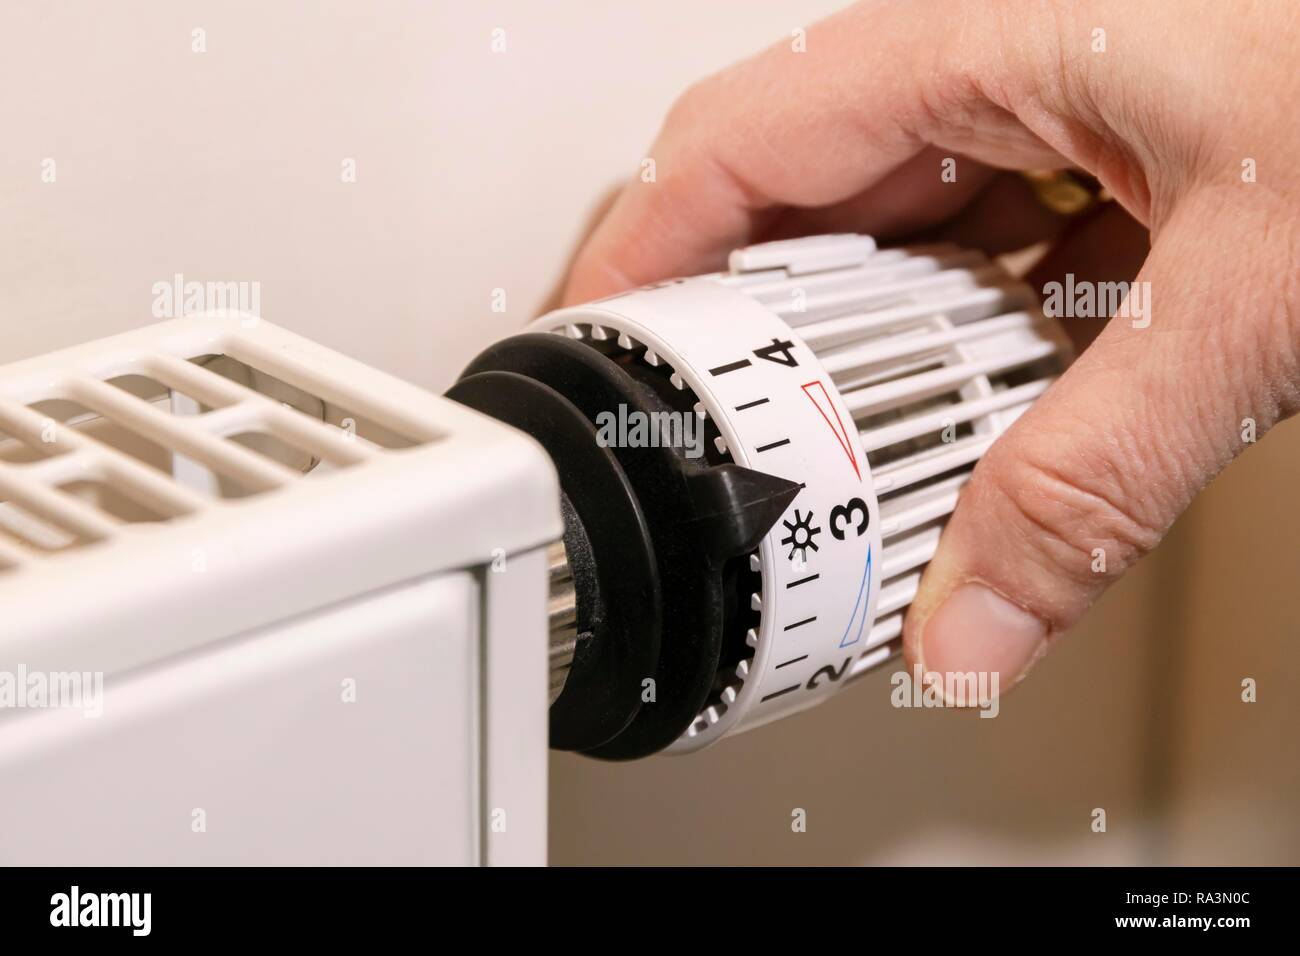 Règle la température à la main d'un thermostat du chauffage, Bavière, Allemagne Banque D'Images